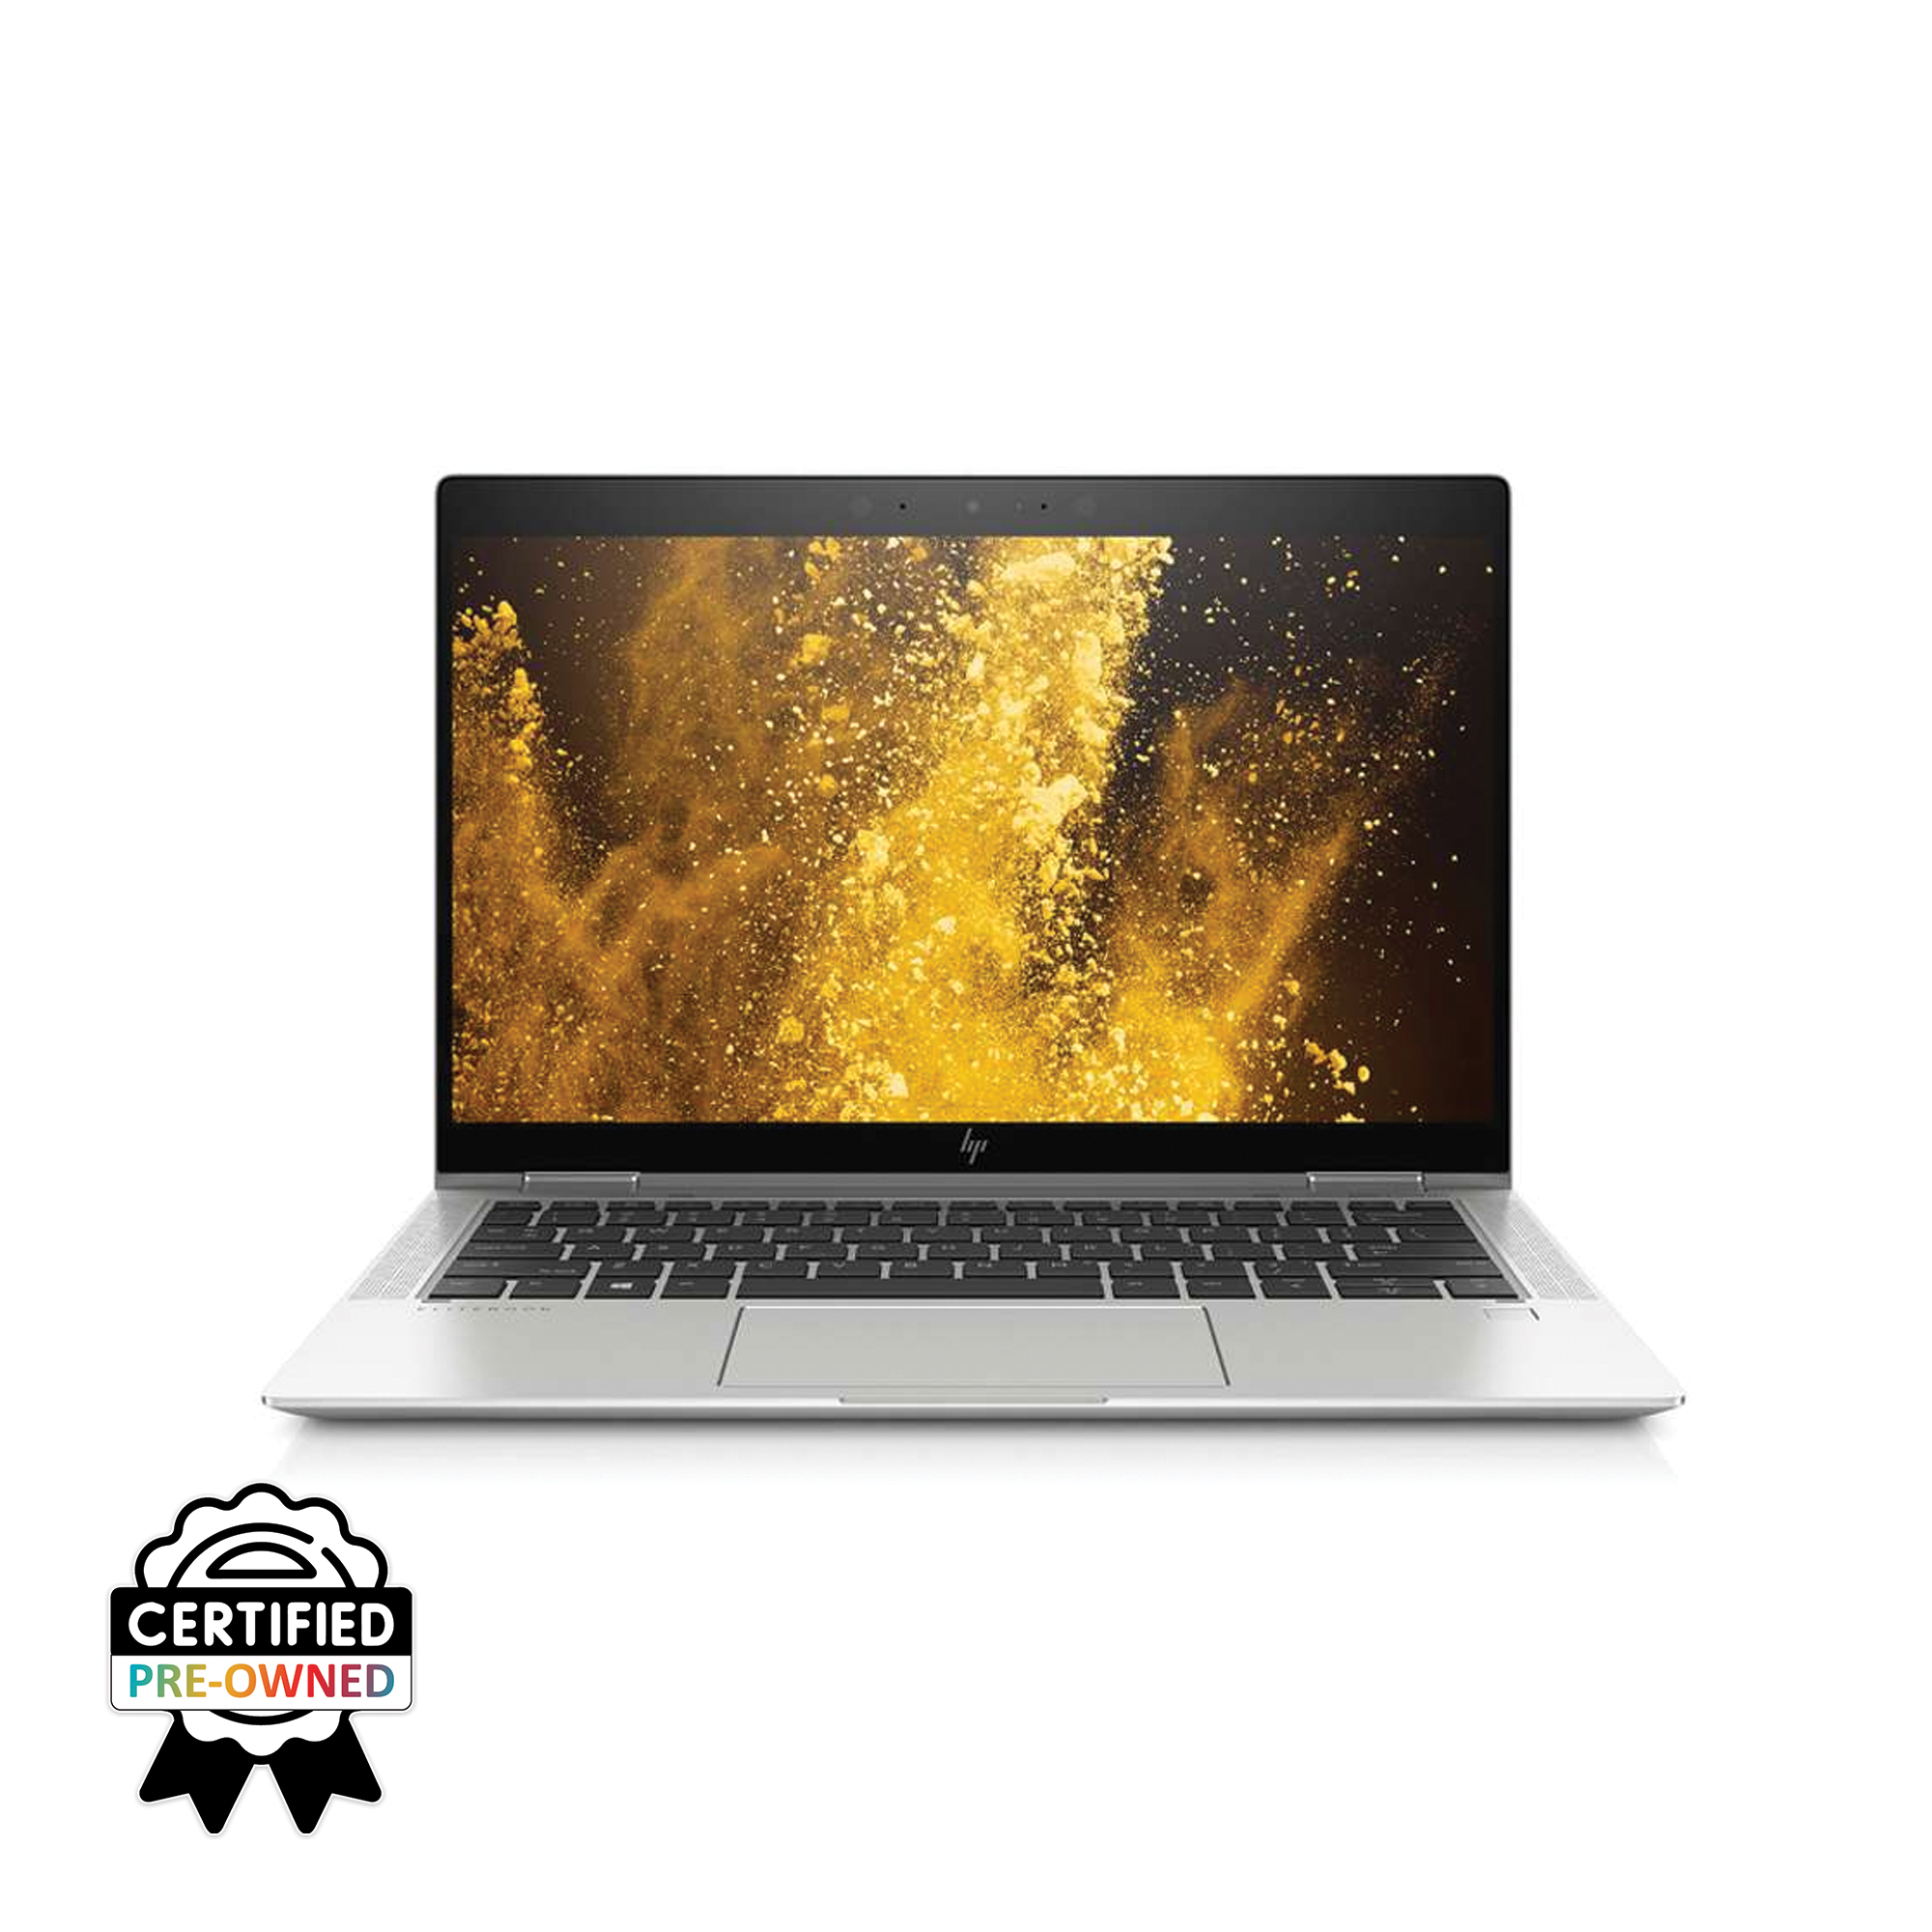 HP EliteBook 1030 G4 Core i5 8th Gen 8GB RAM 256GB SSD Laptop